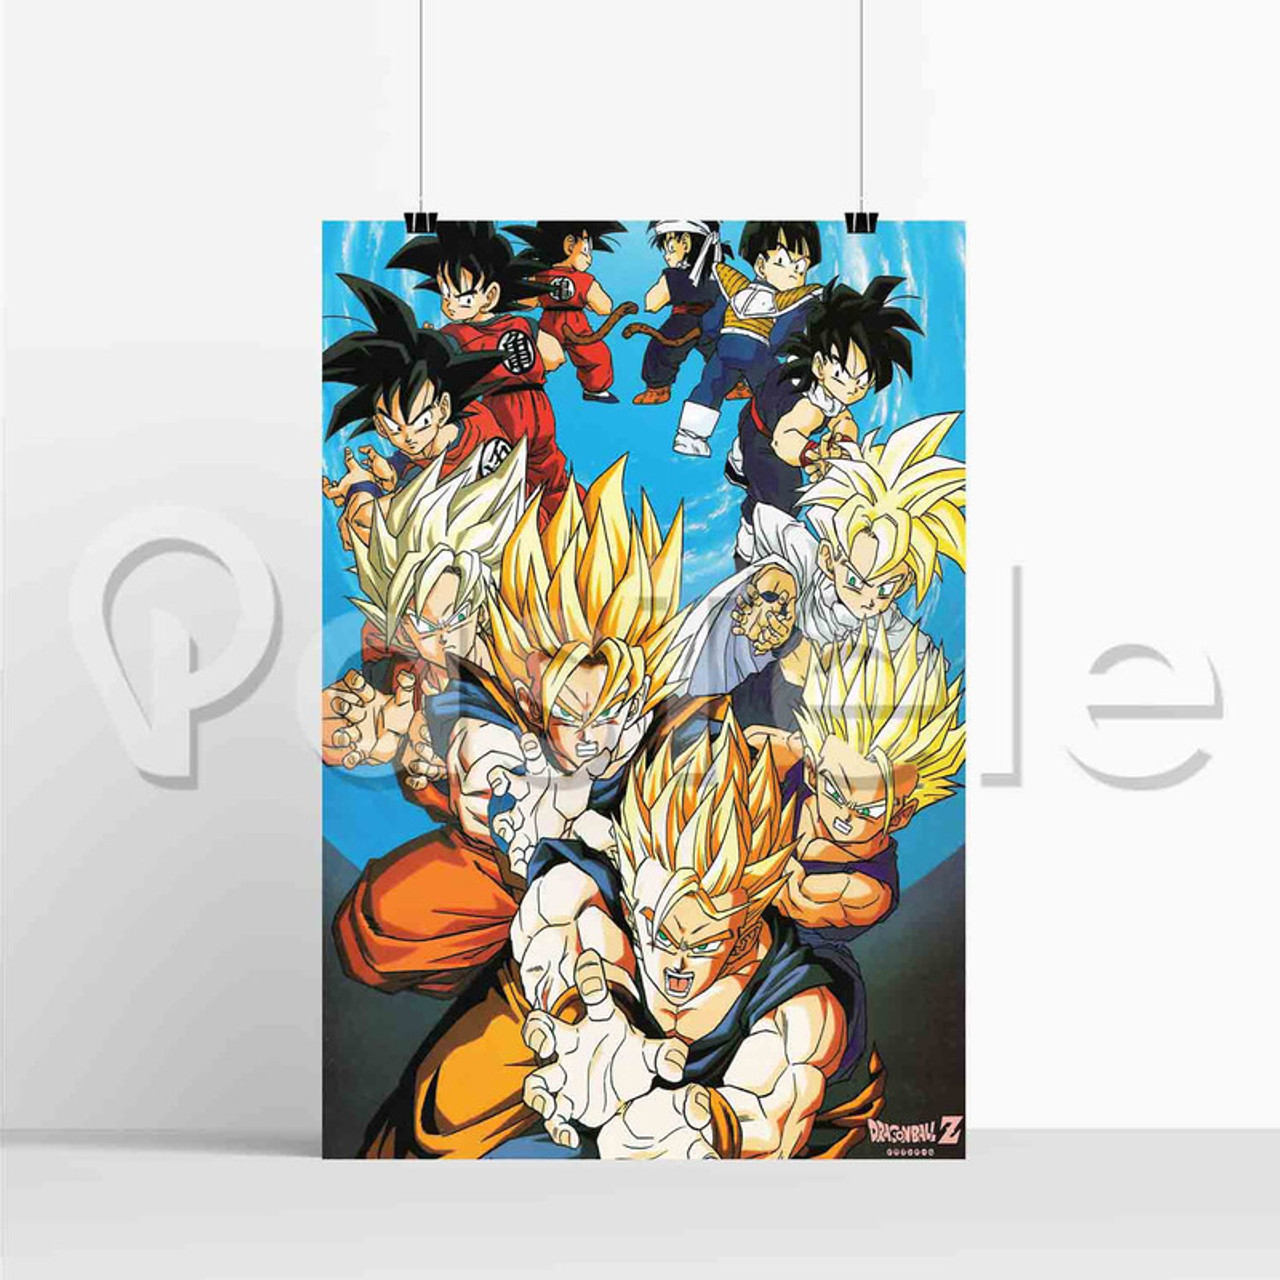 Goku Super Saiyan 3 Manga - Goku - Posters and Art Prints